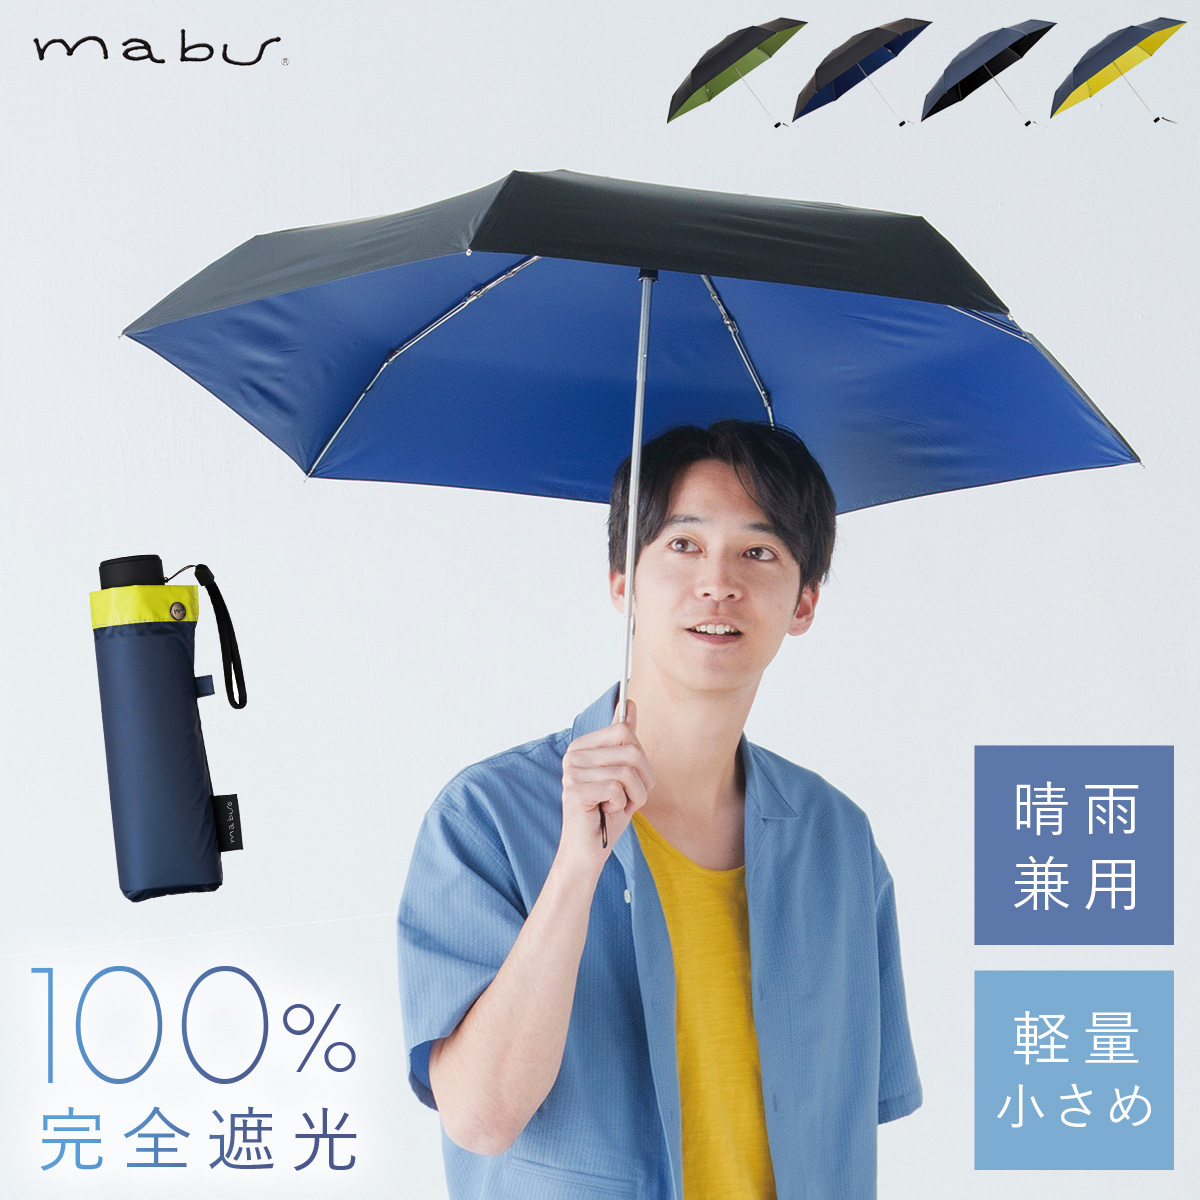 超特価品新品晴雨兼用 長傘 フィオーリ柄 遮光率99%以上 雨傘 日傘 傘